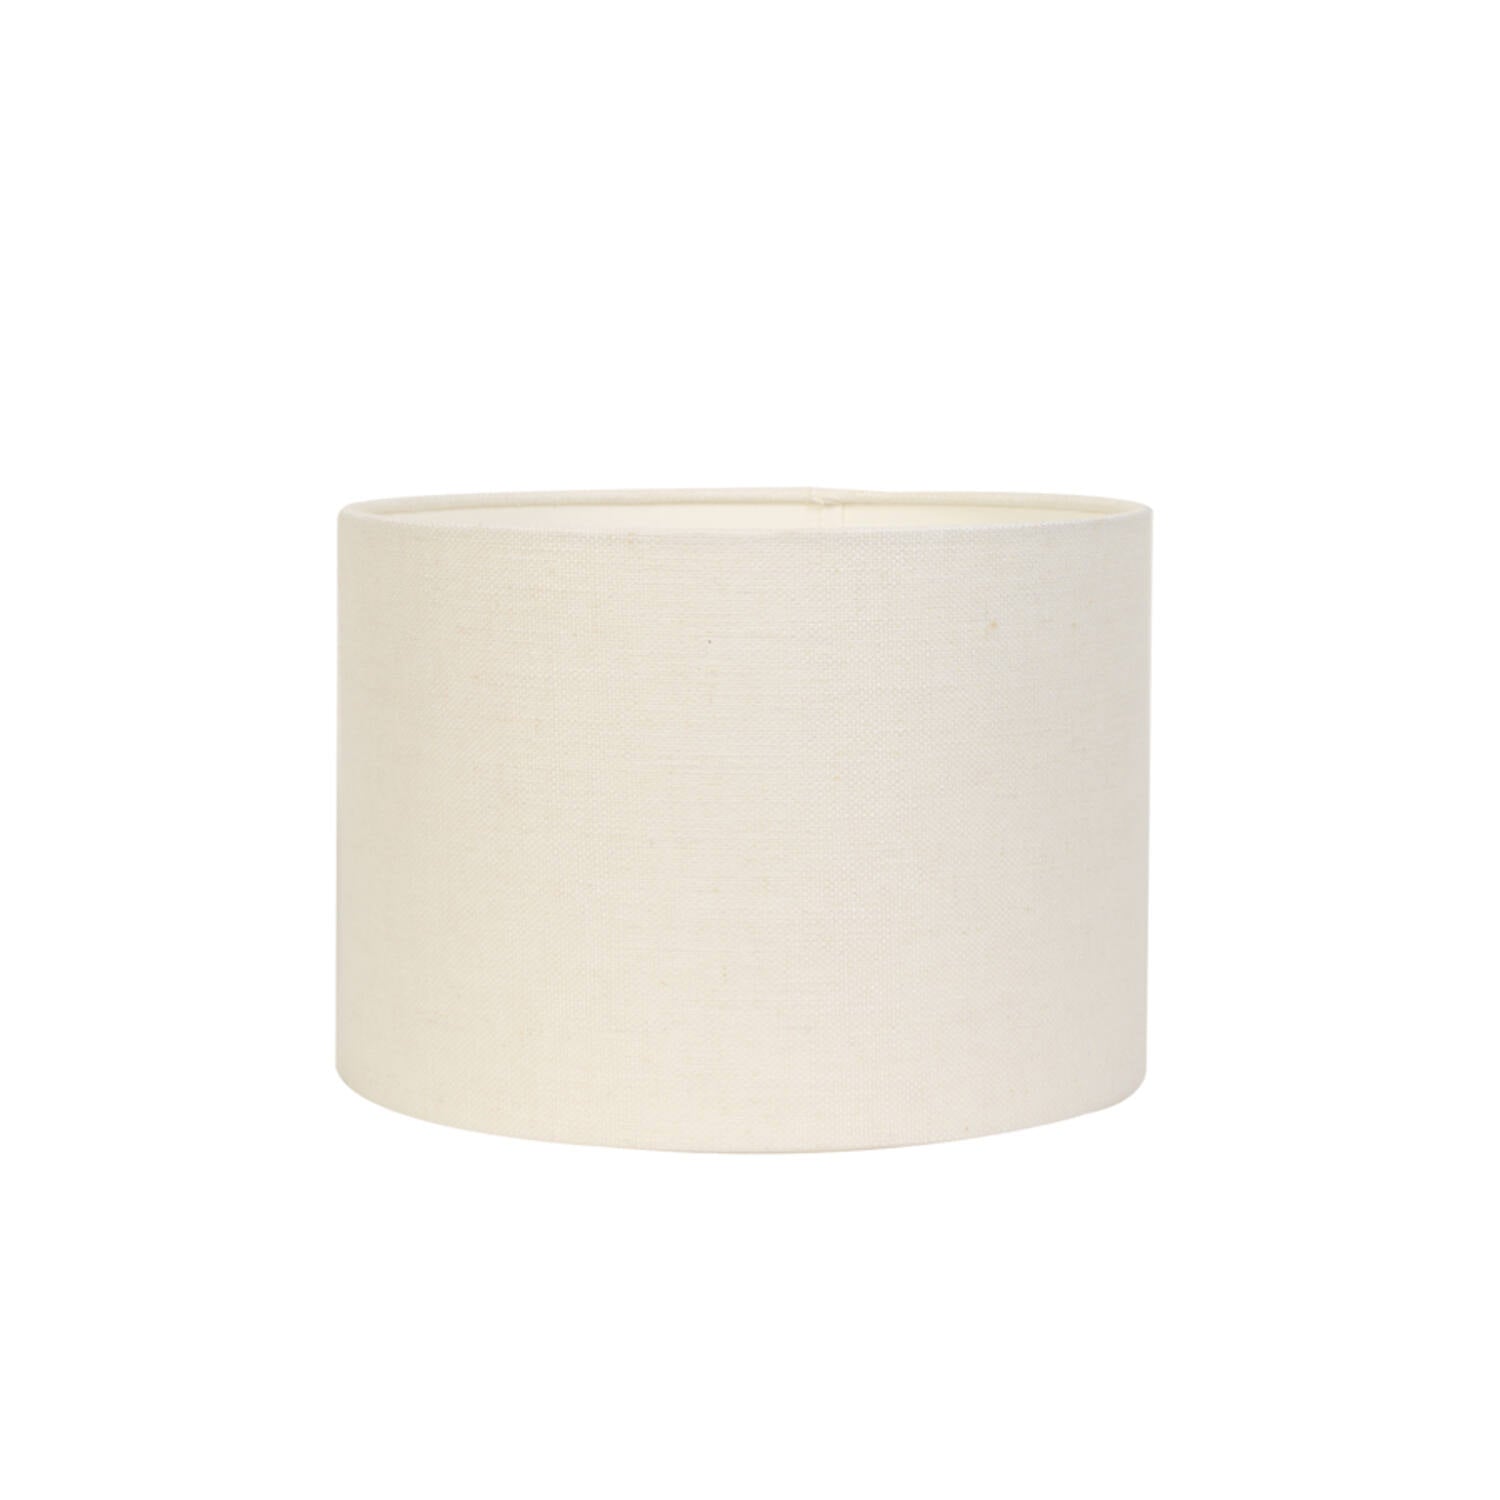 Large white drum shape lamp shade.